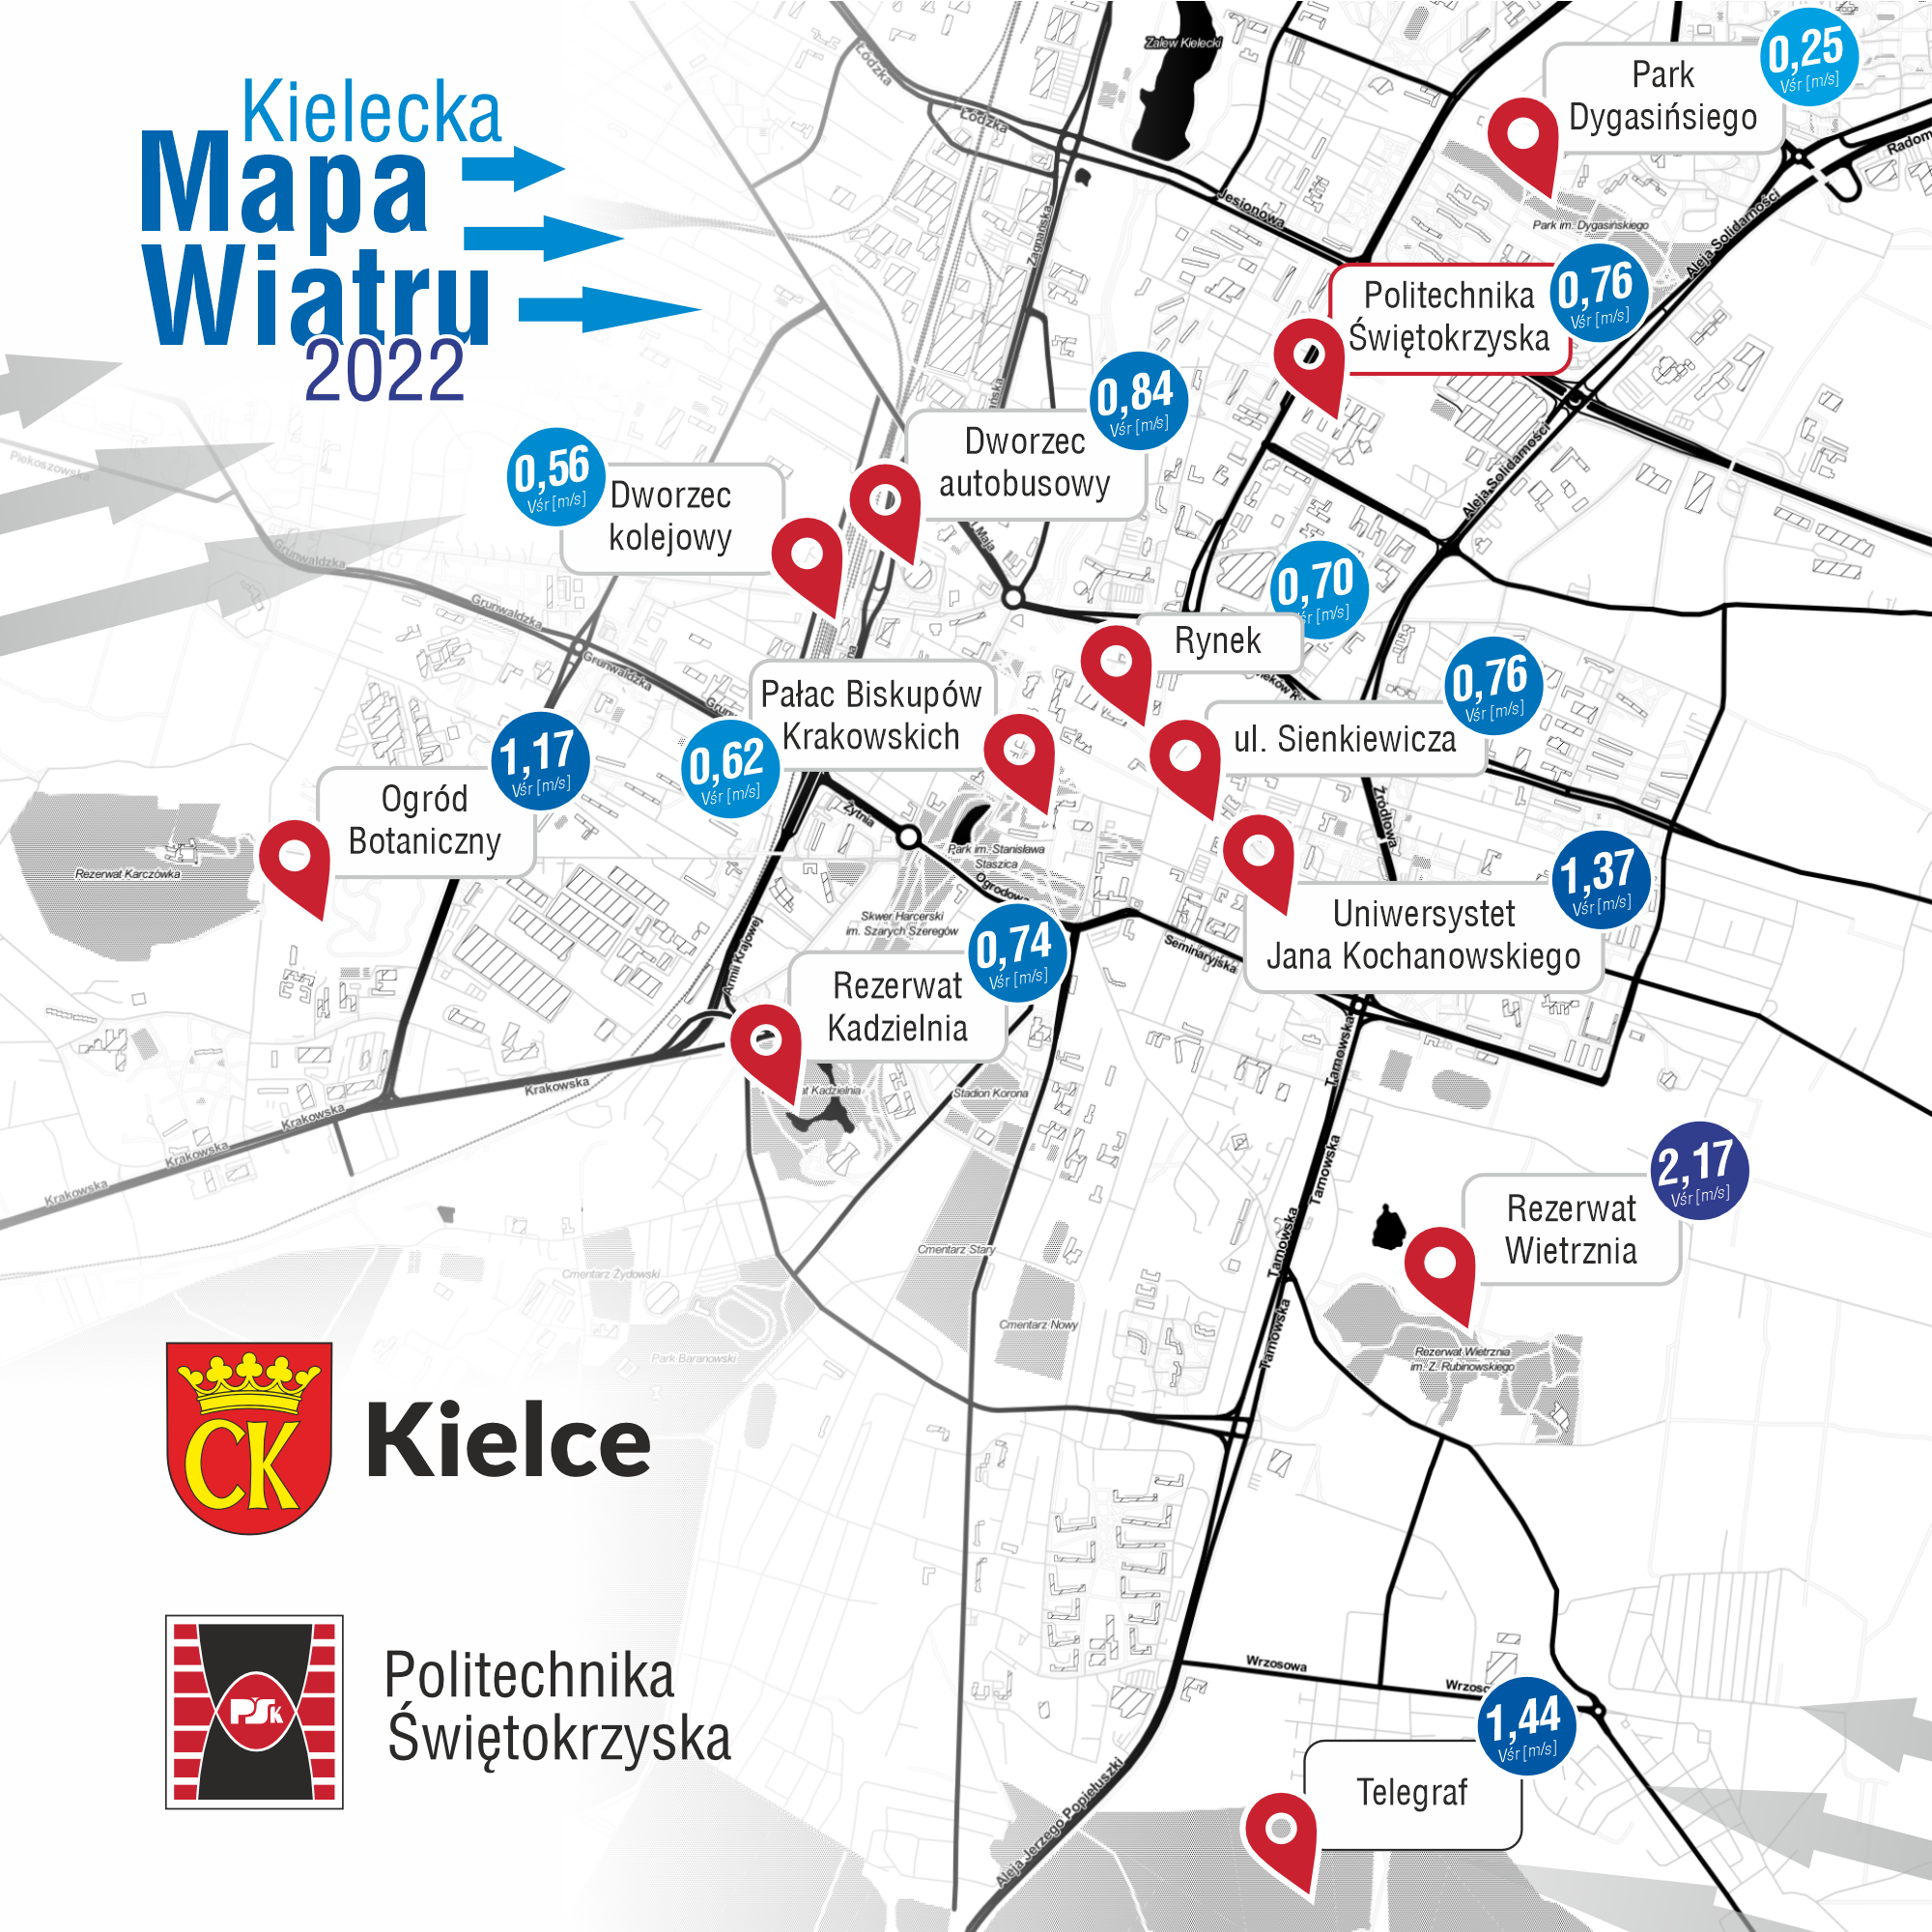 Kielecka-Mapa-Wiatru-2022.PNG